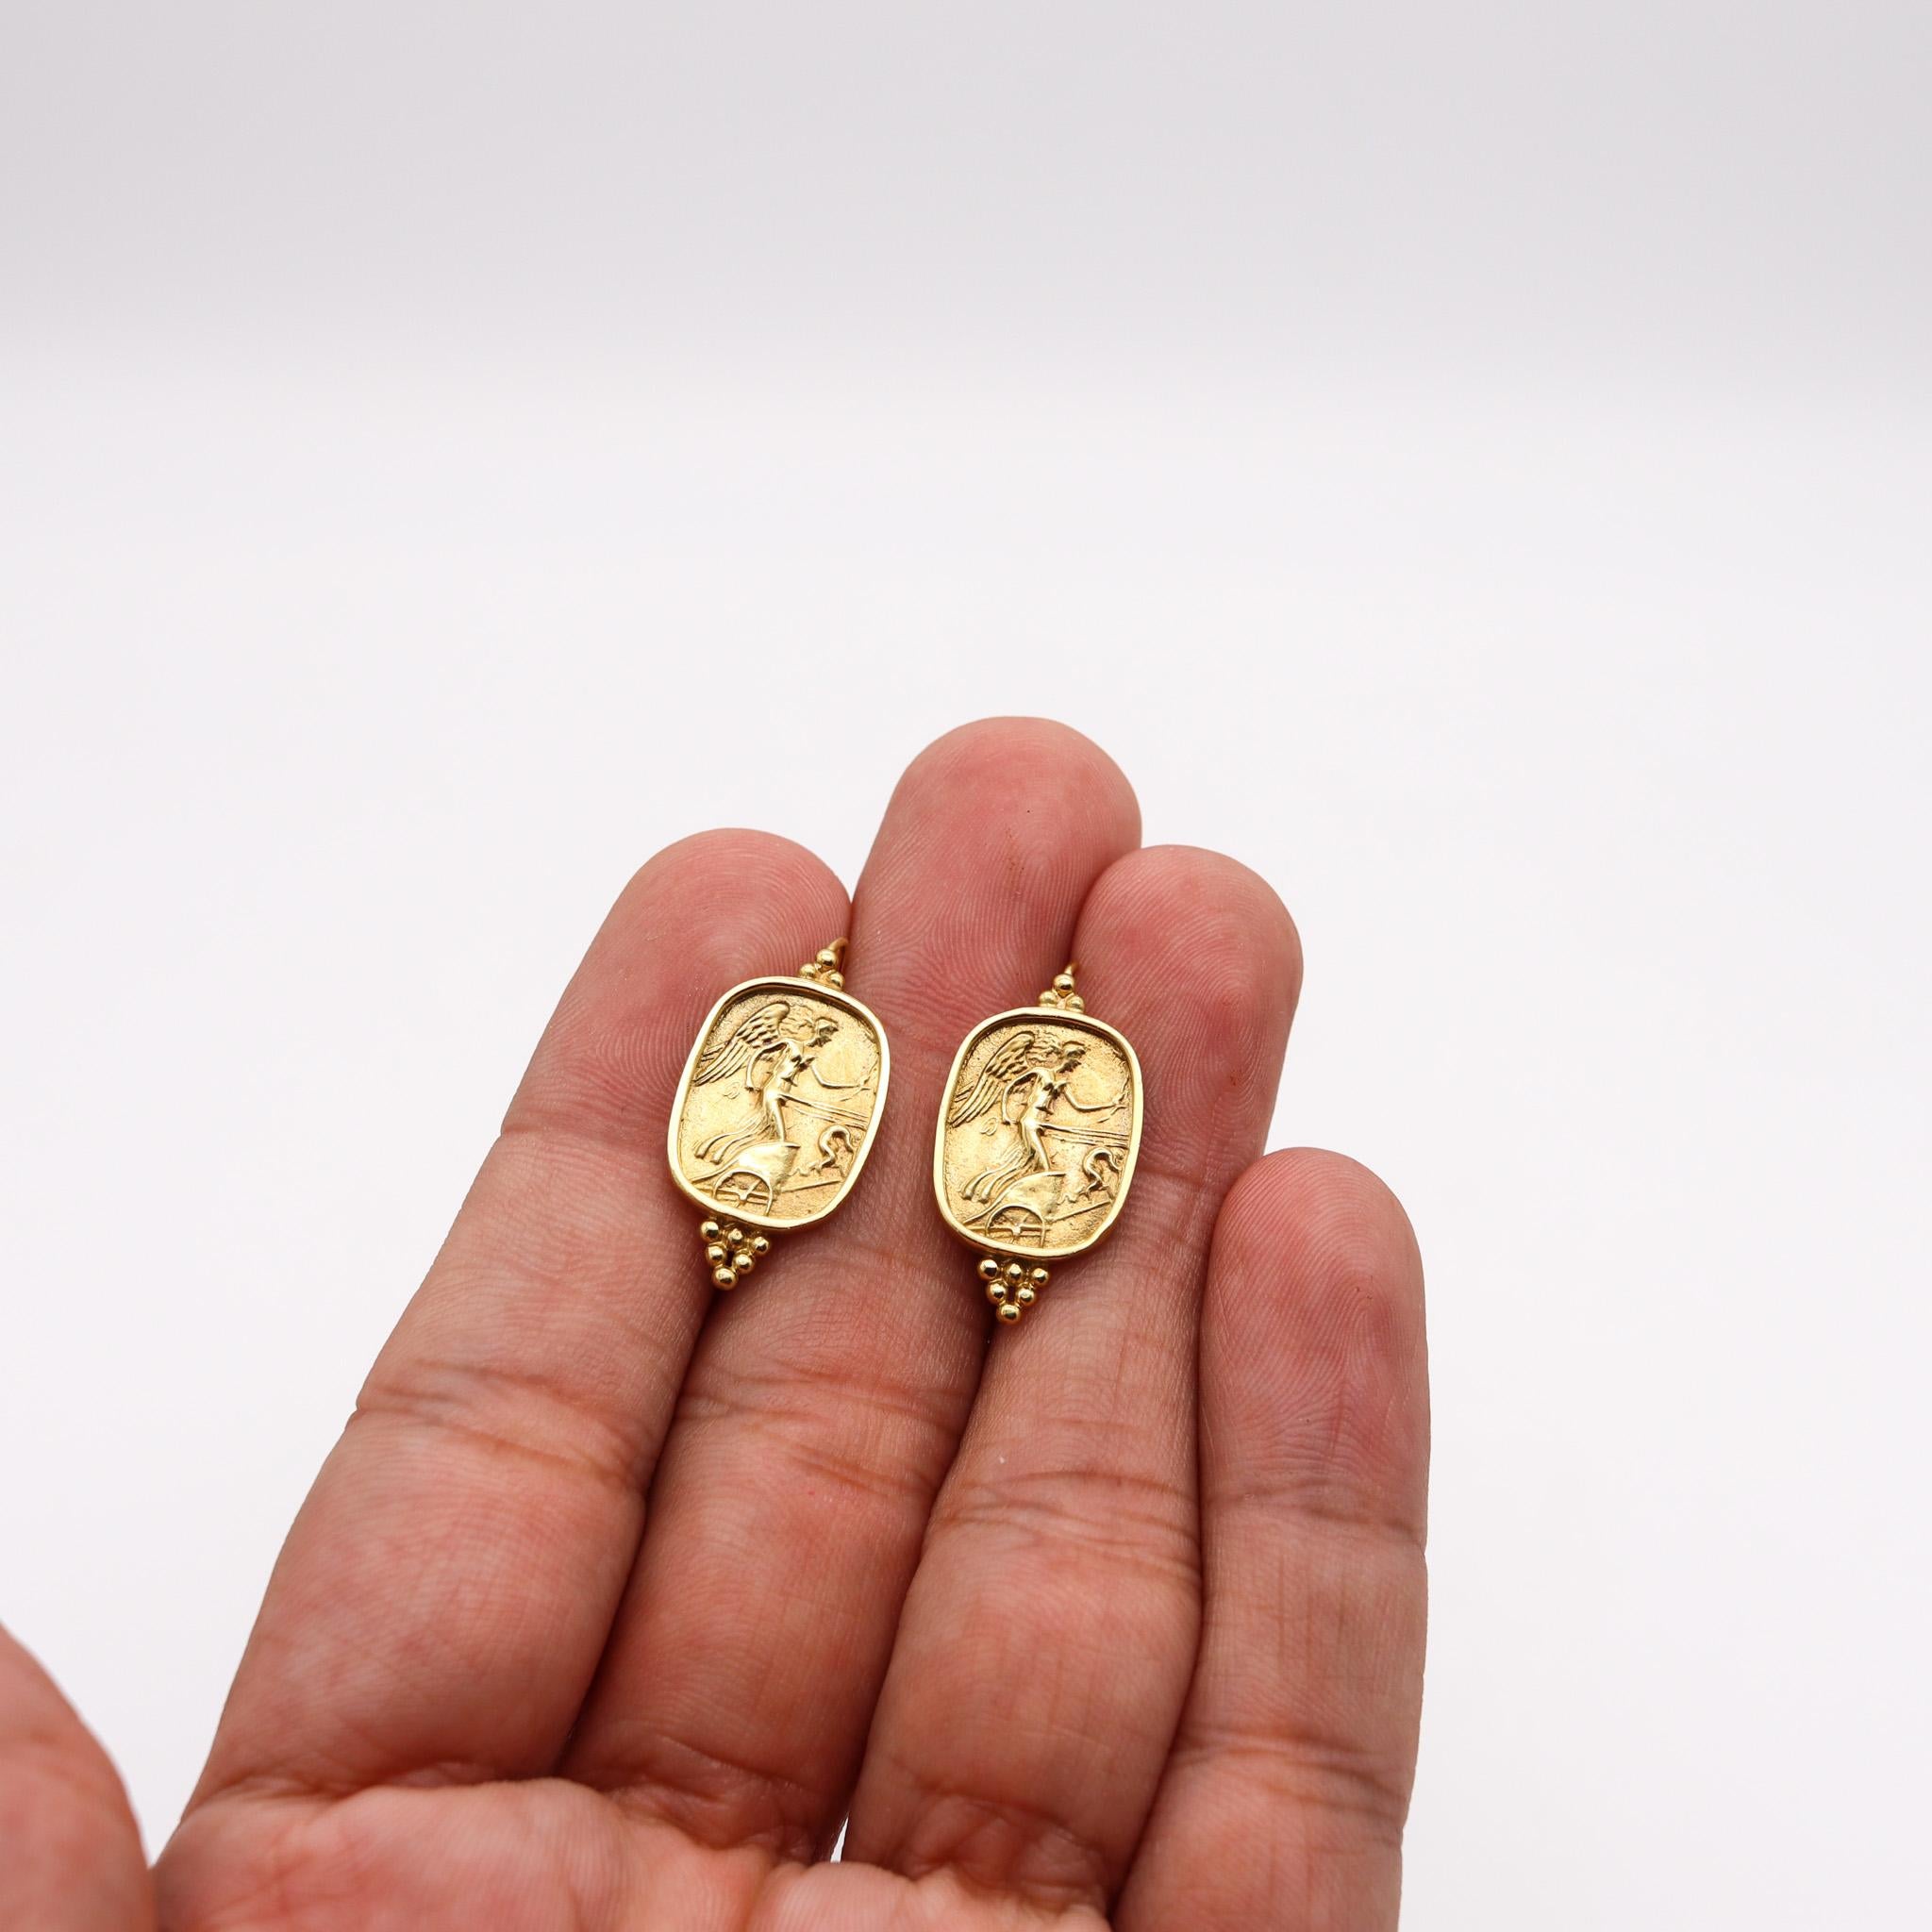 Classical Roman Seidengang Roman Revival Classic Drop Earrings in 18kt Yellow Gold